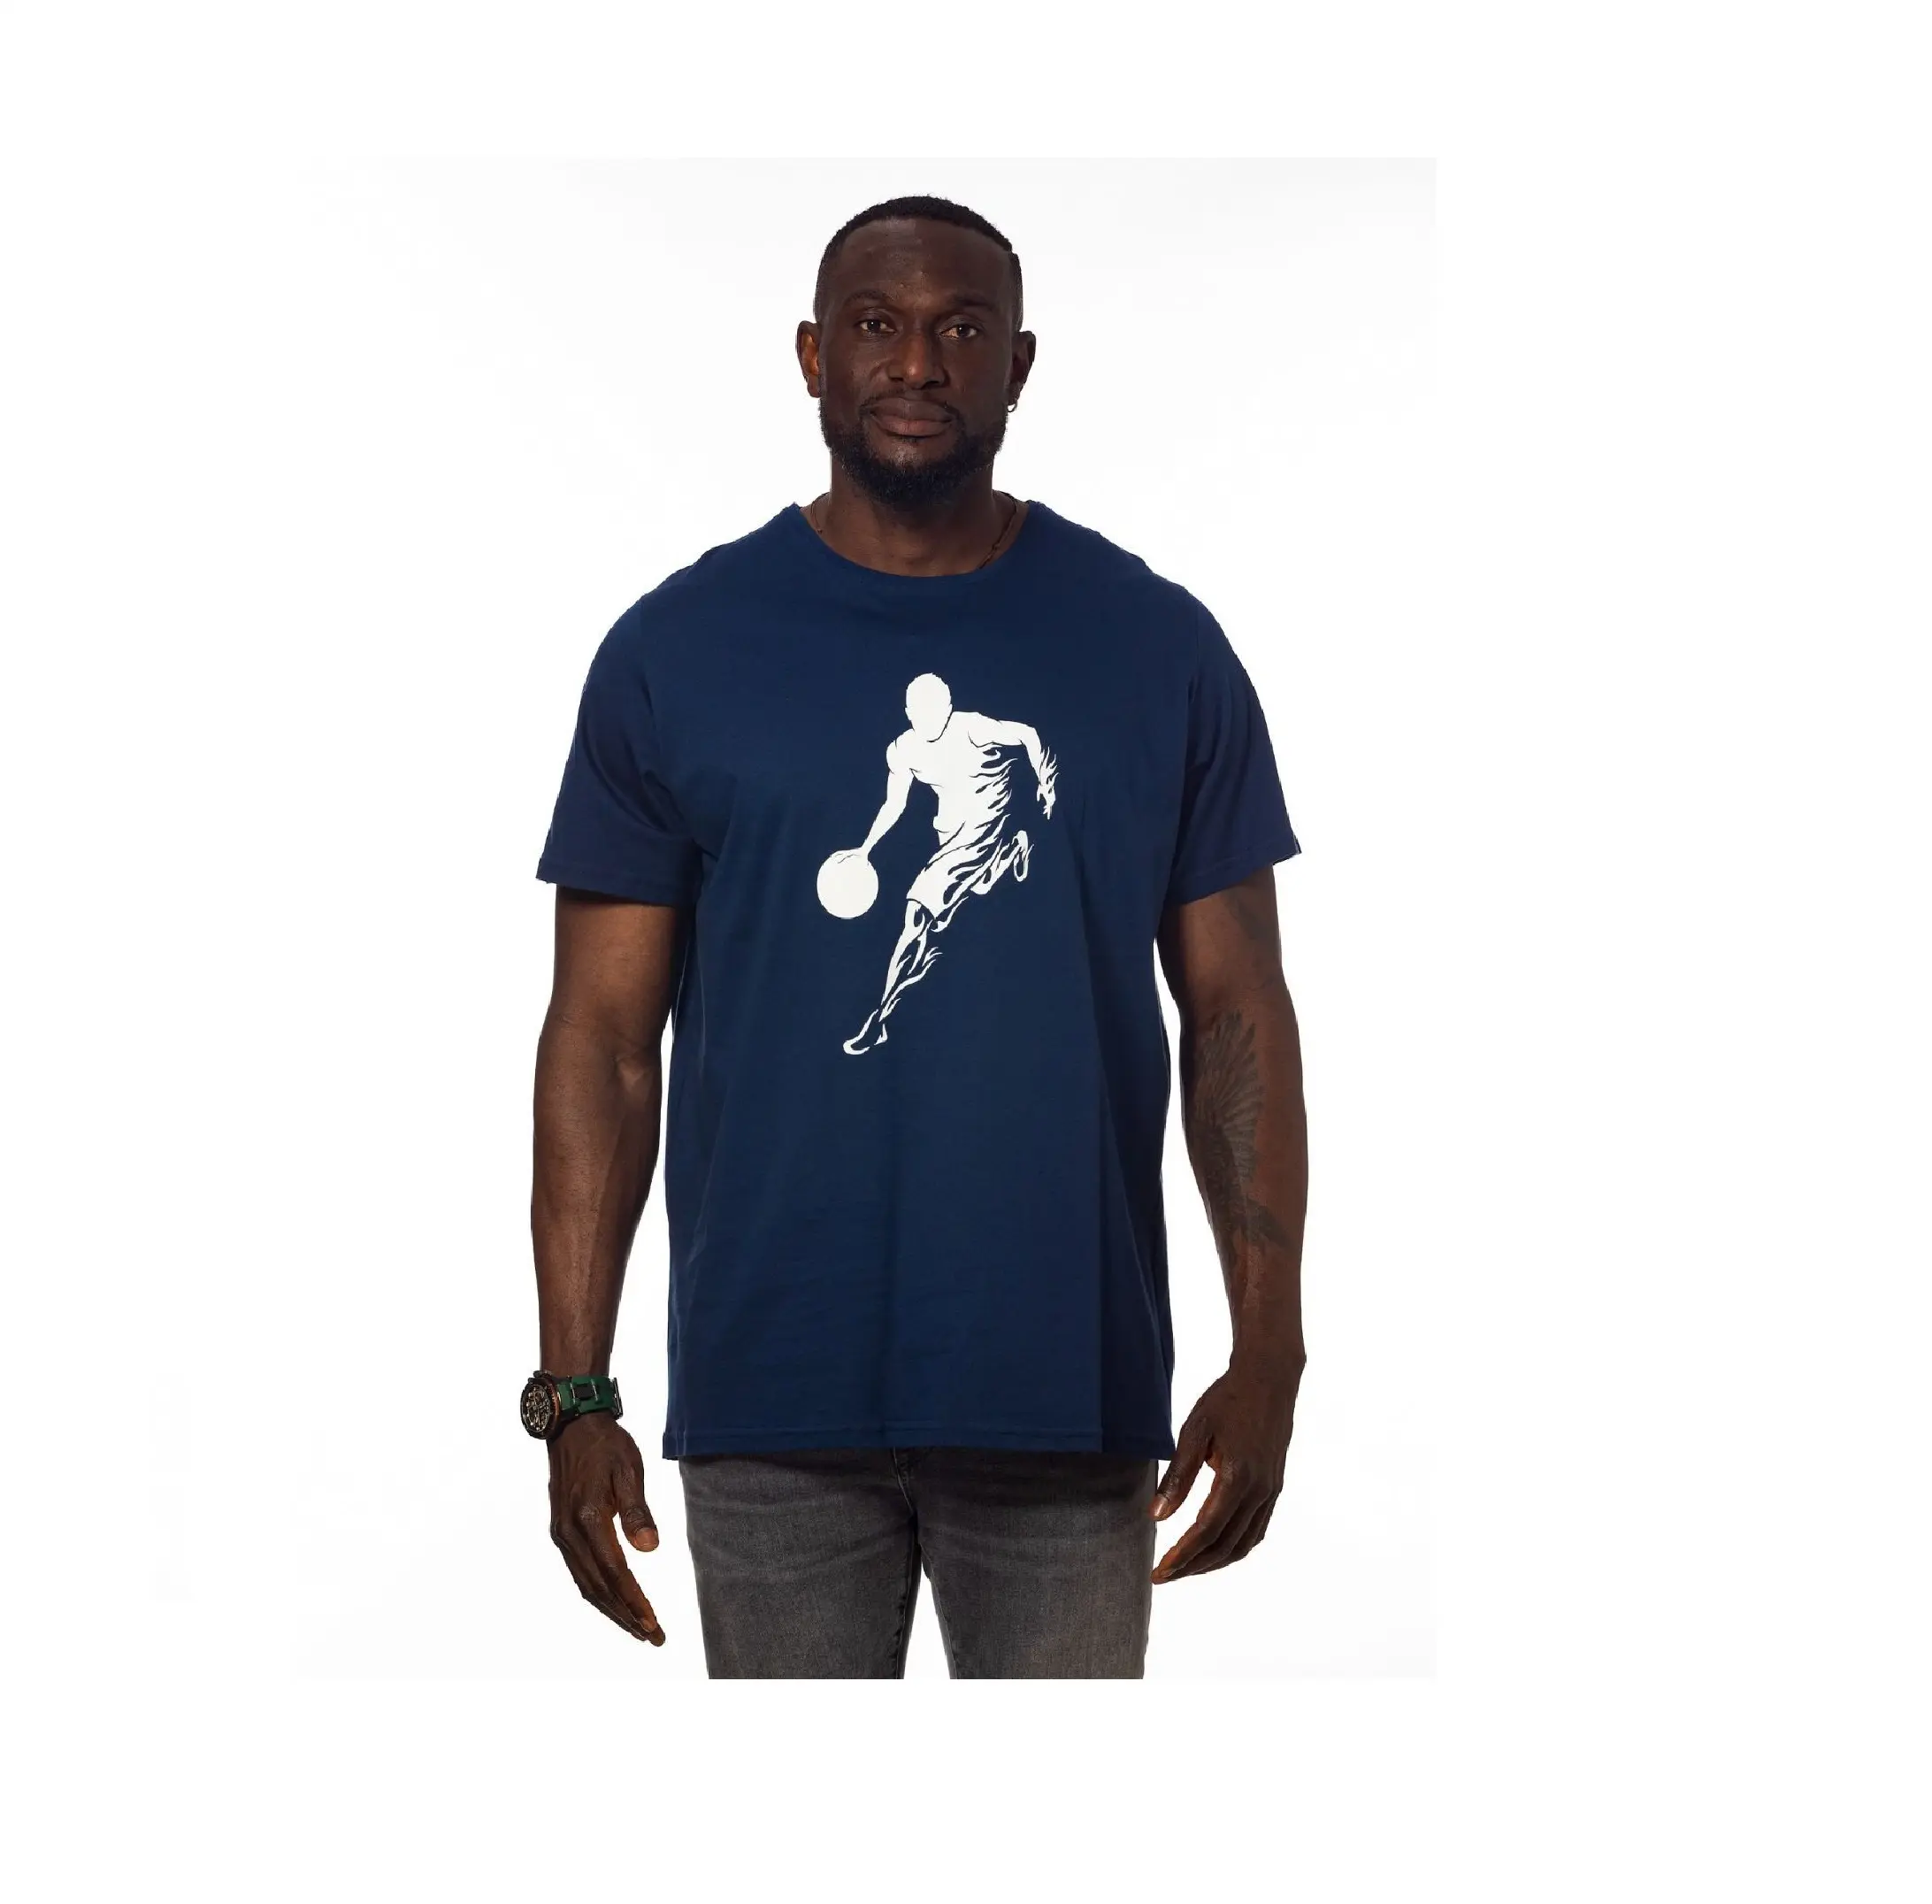 Спортивная Мужская футболка, повседневный и современный дизайн, темно-синий цвет, высокое качество, хлопок, Сделано в Турции